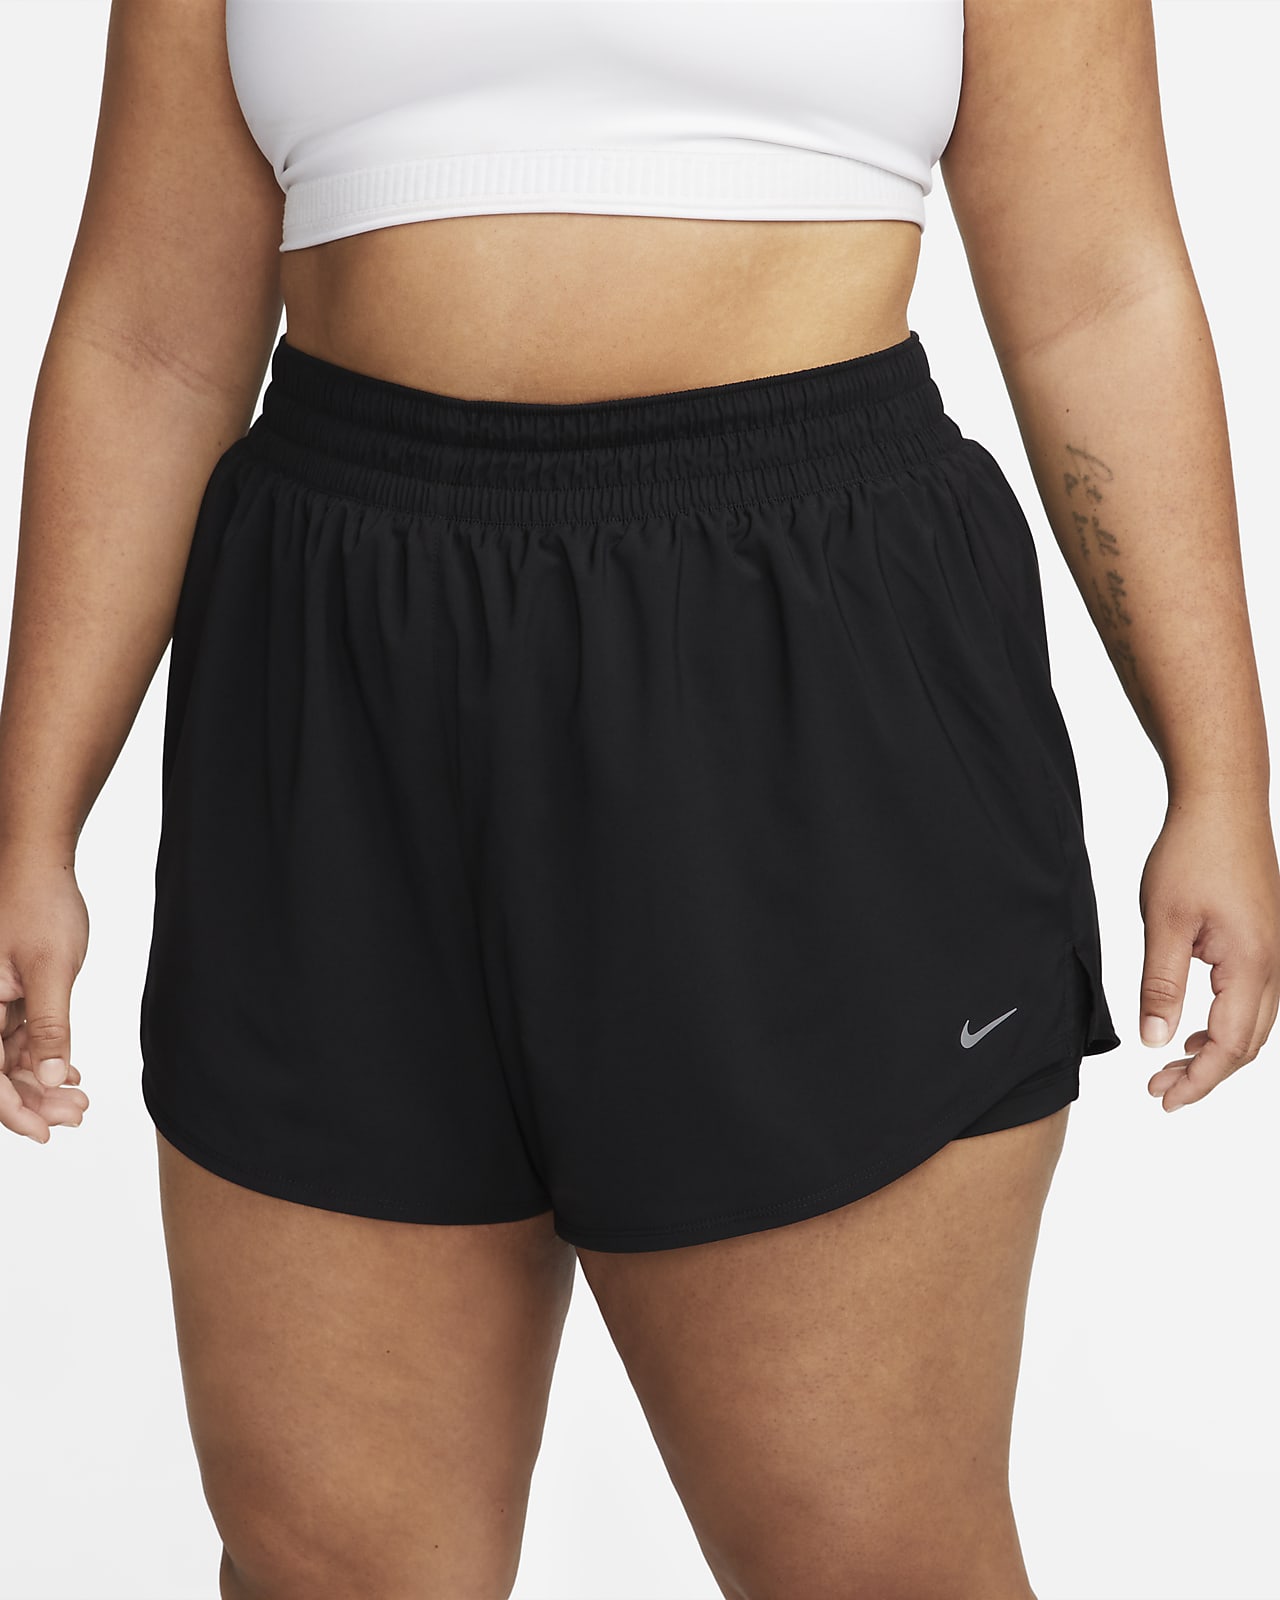 Masaccio Viva Generalmente Nike Dri-FIT One Women's High-Rise 3" 2-in-1 Shorts (Plus). Nike.com